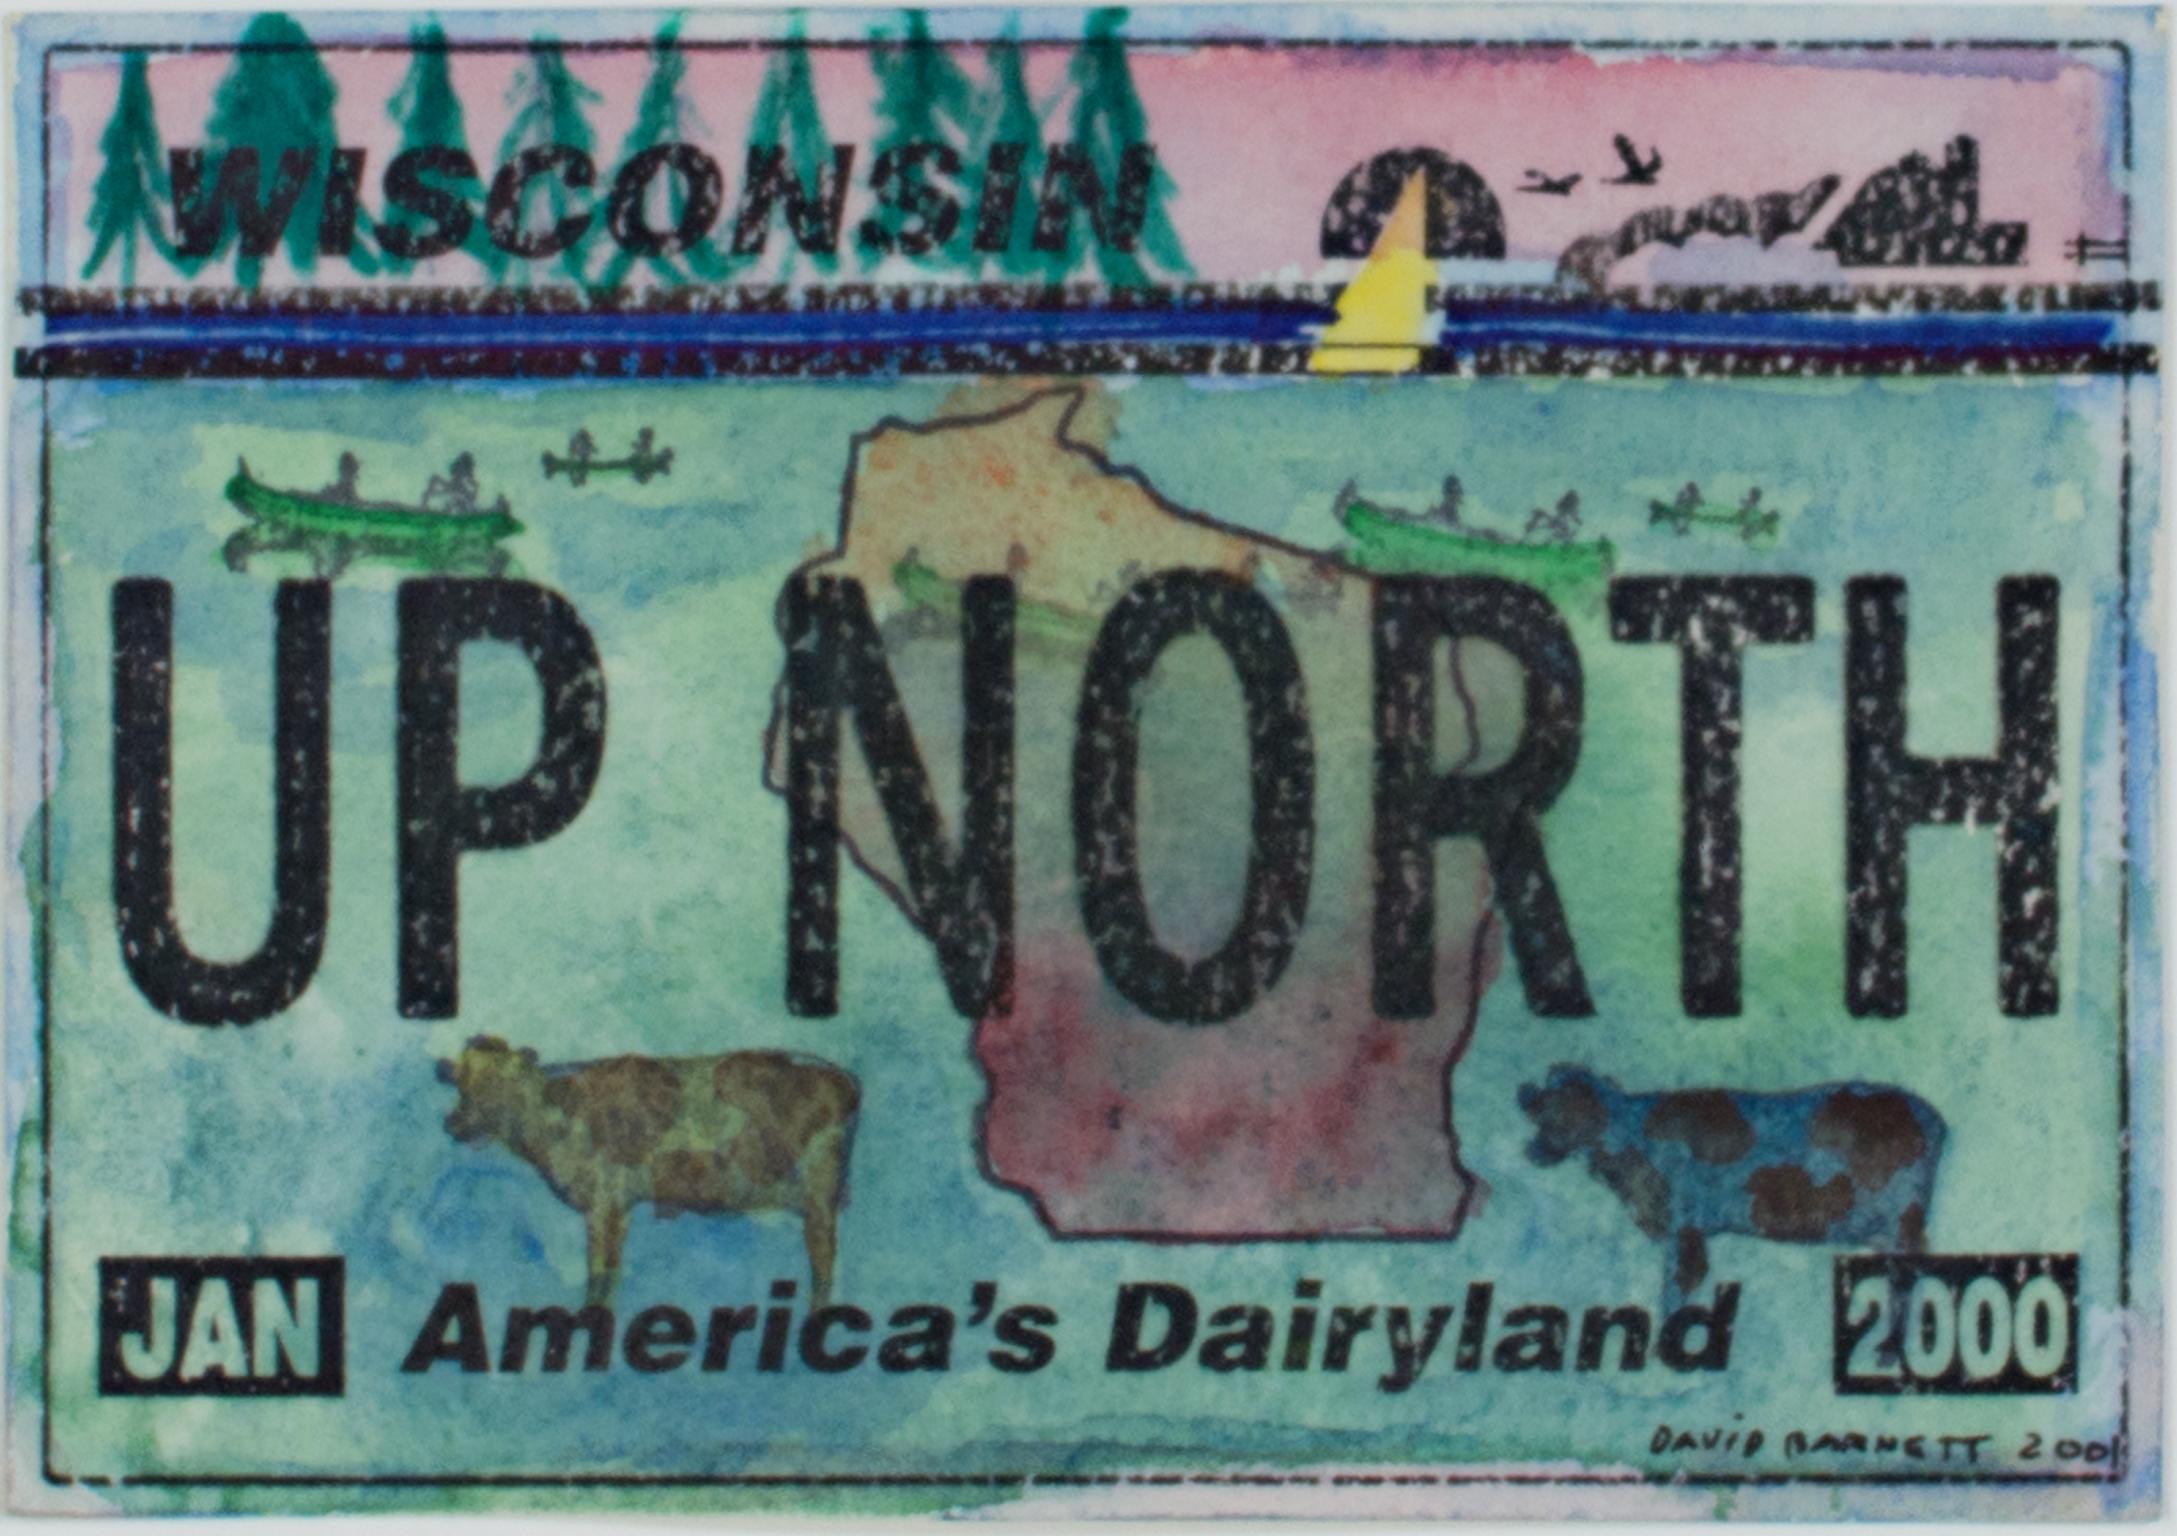 "Up North Wisconsin Series : Two Cows with Canoeists" est une œuvre originale de David Barnett, composée d'aquarelle, d'encre et de tampons en caoutchouc. La pièce comporte un timbre représentant une plaque d'immatriculation du Wisconsin sur